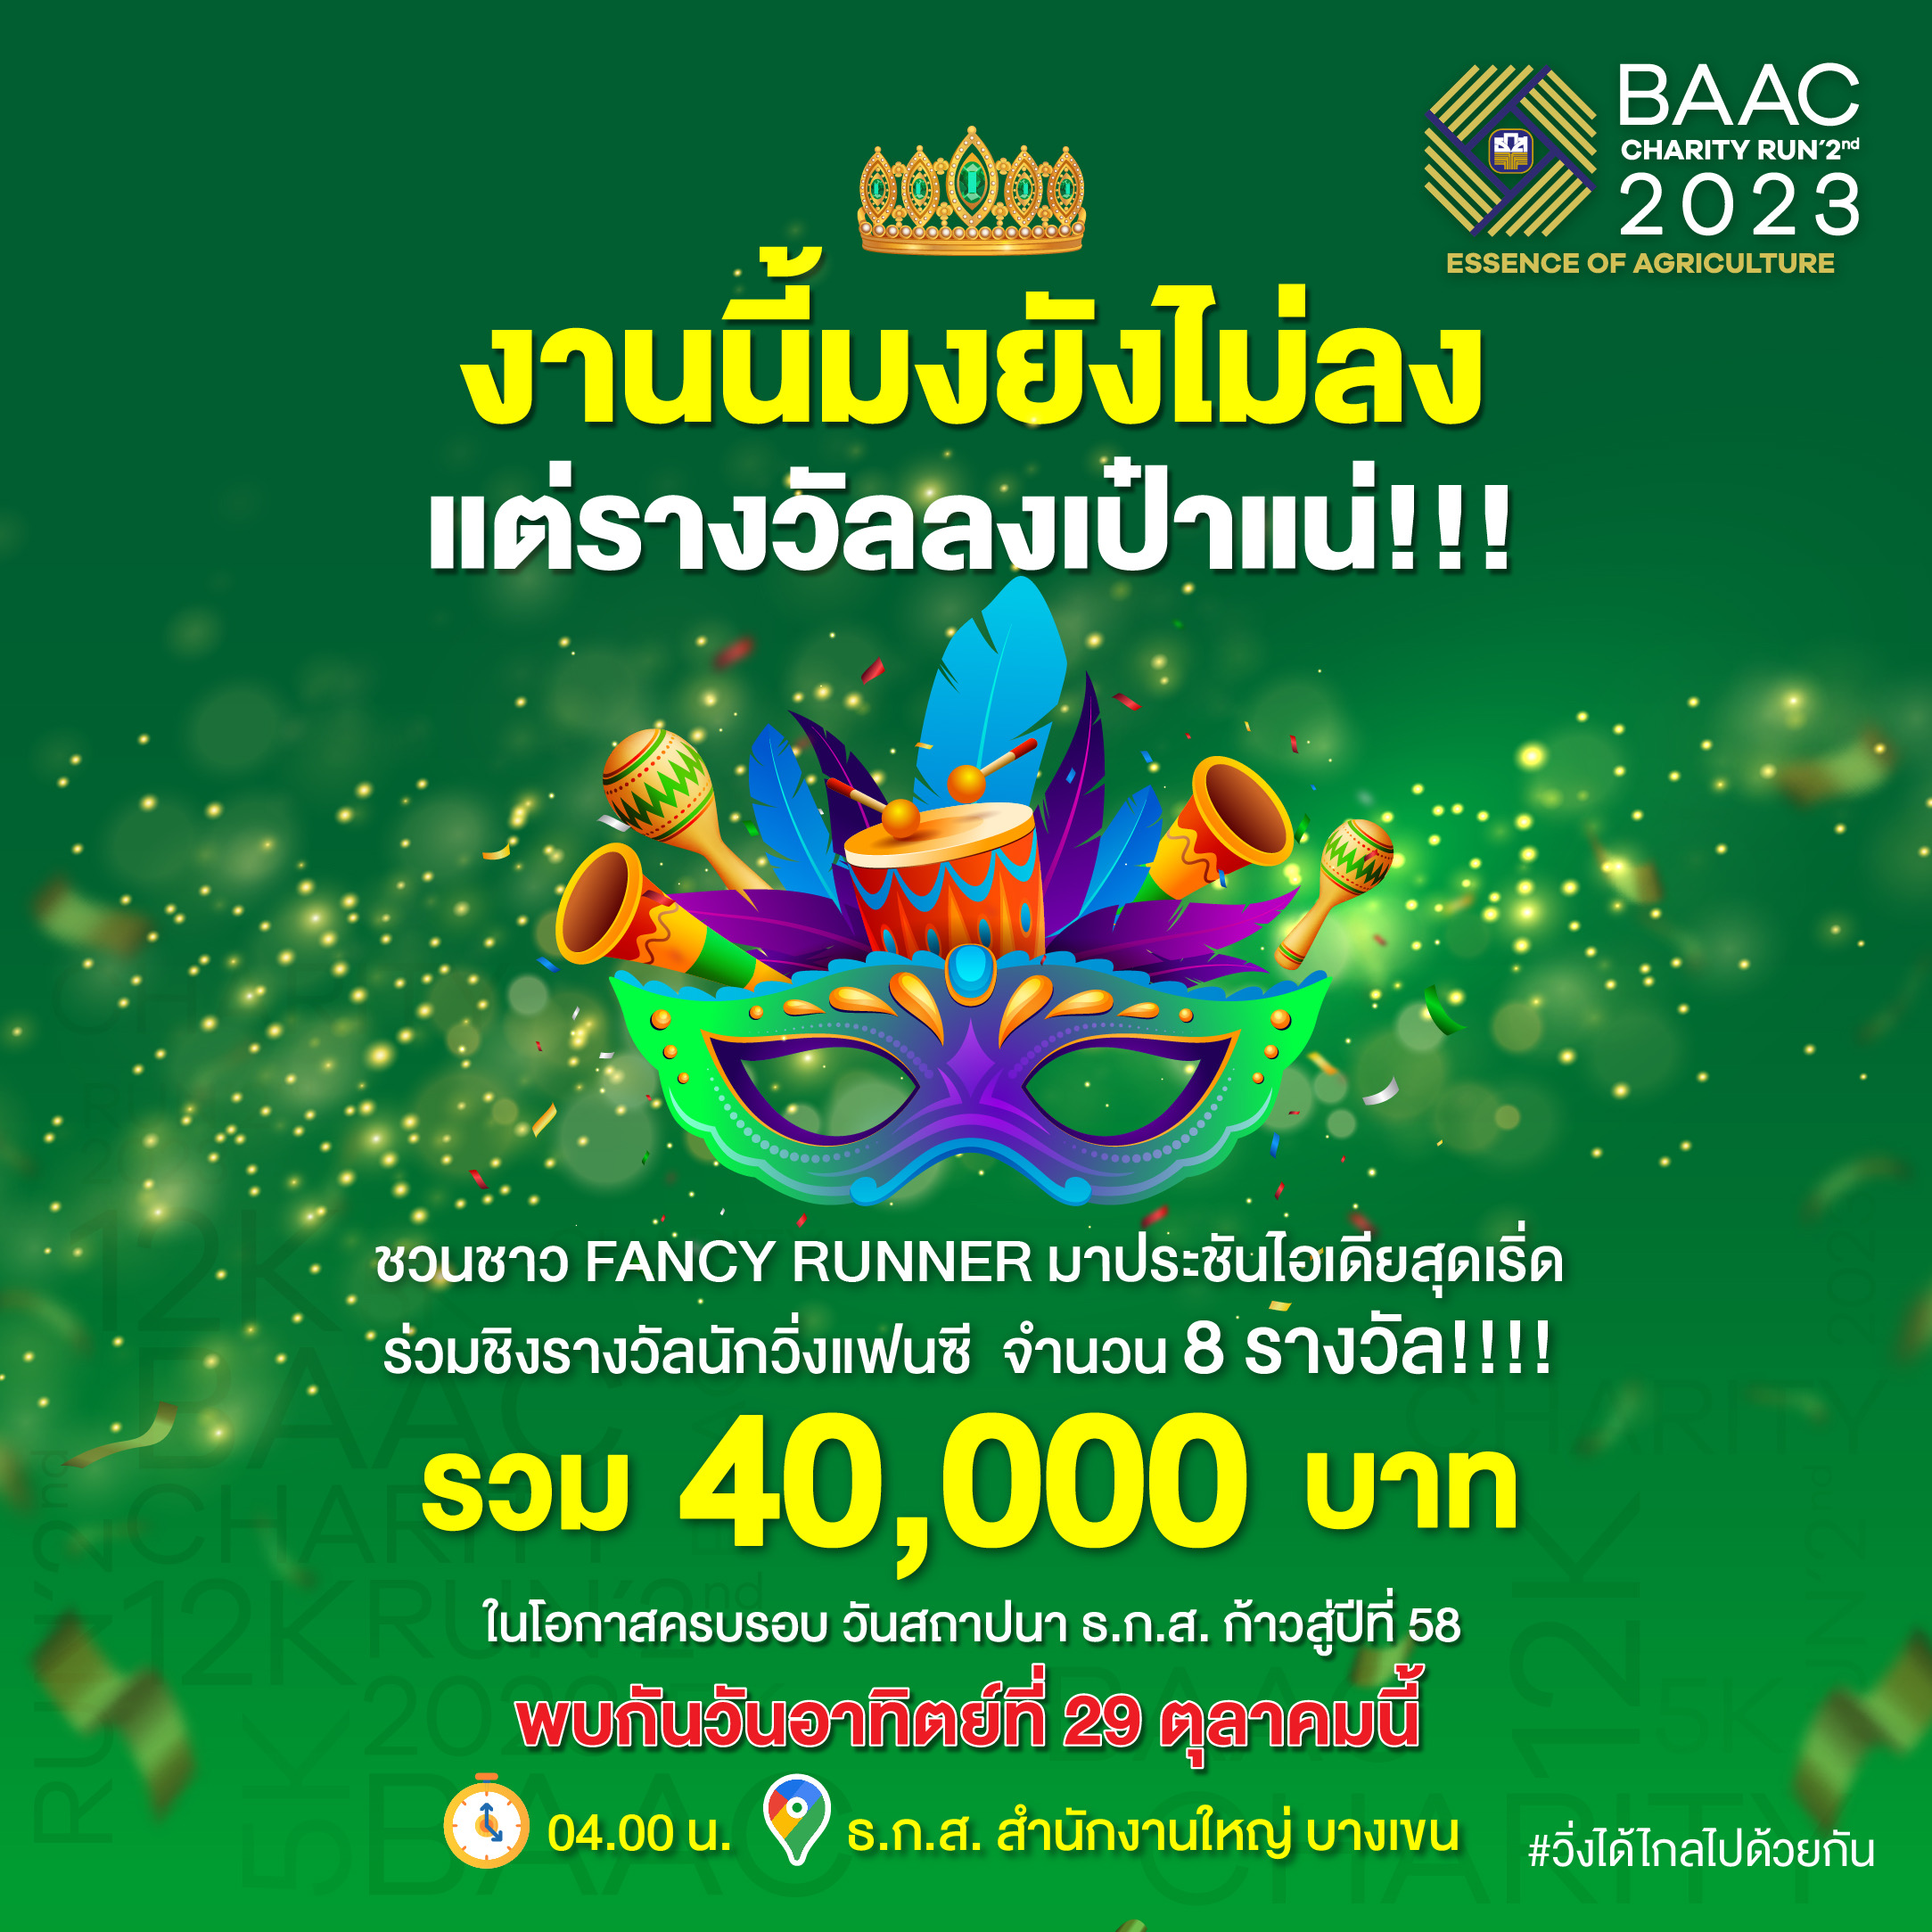 ธ.ก.ส. ปลื้ม! ผู้สมัครวิ่งการกุศล BAAC Charity Run 2nd2023 ทะลุเป้า 4,000 คน